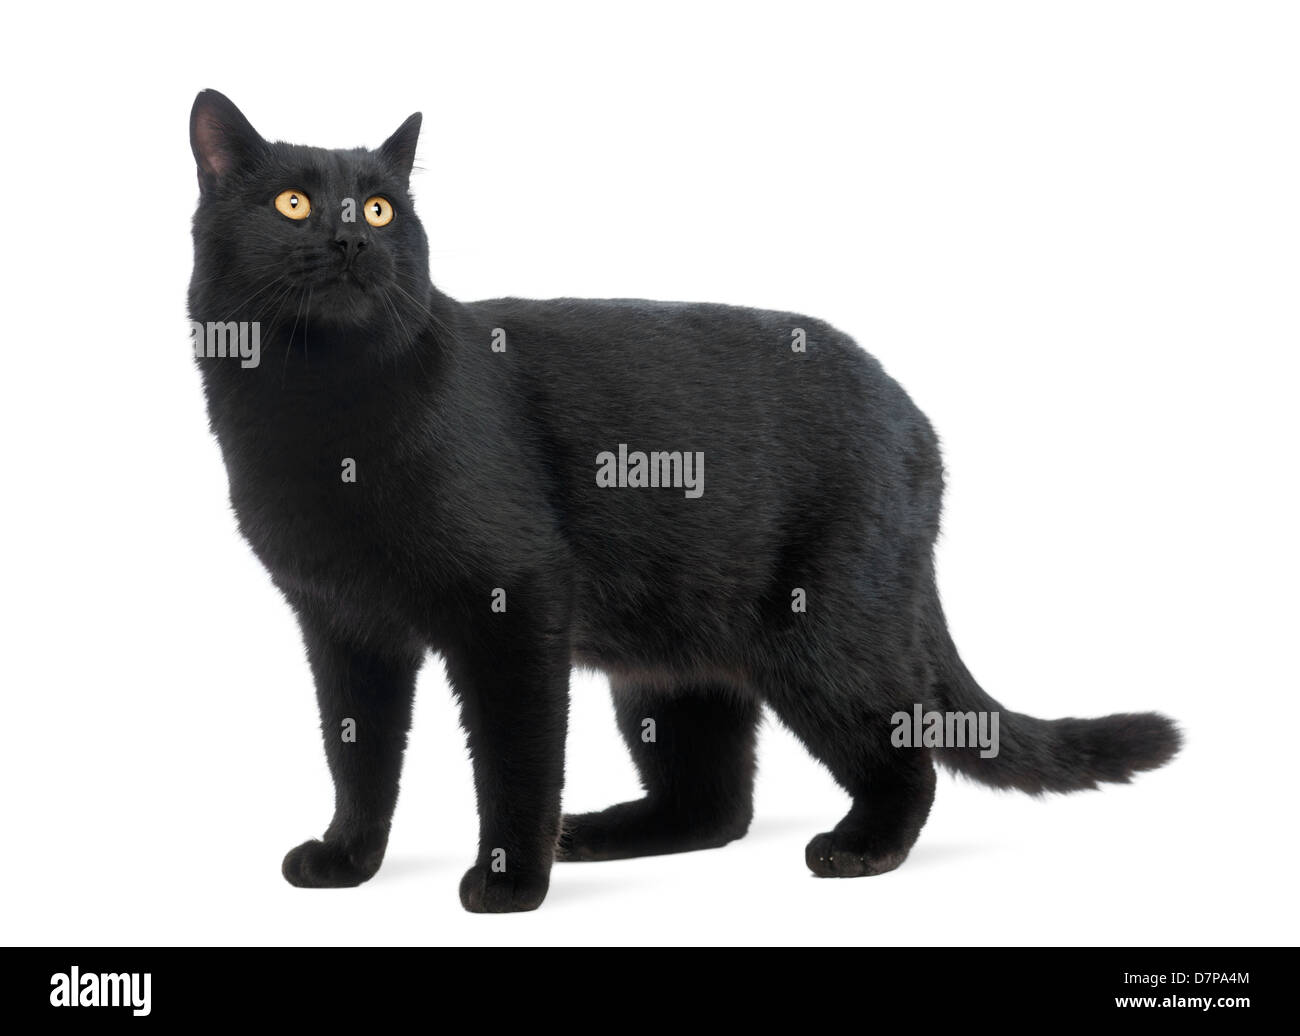 Gatto nero cercando contro uno sfondo bianco Foto Stock